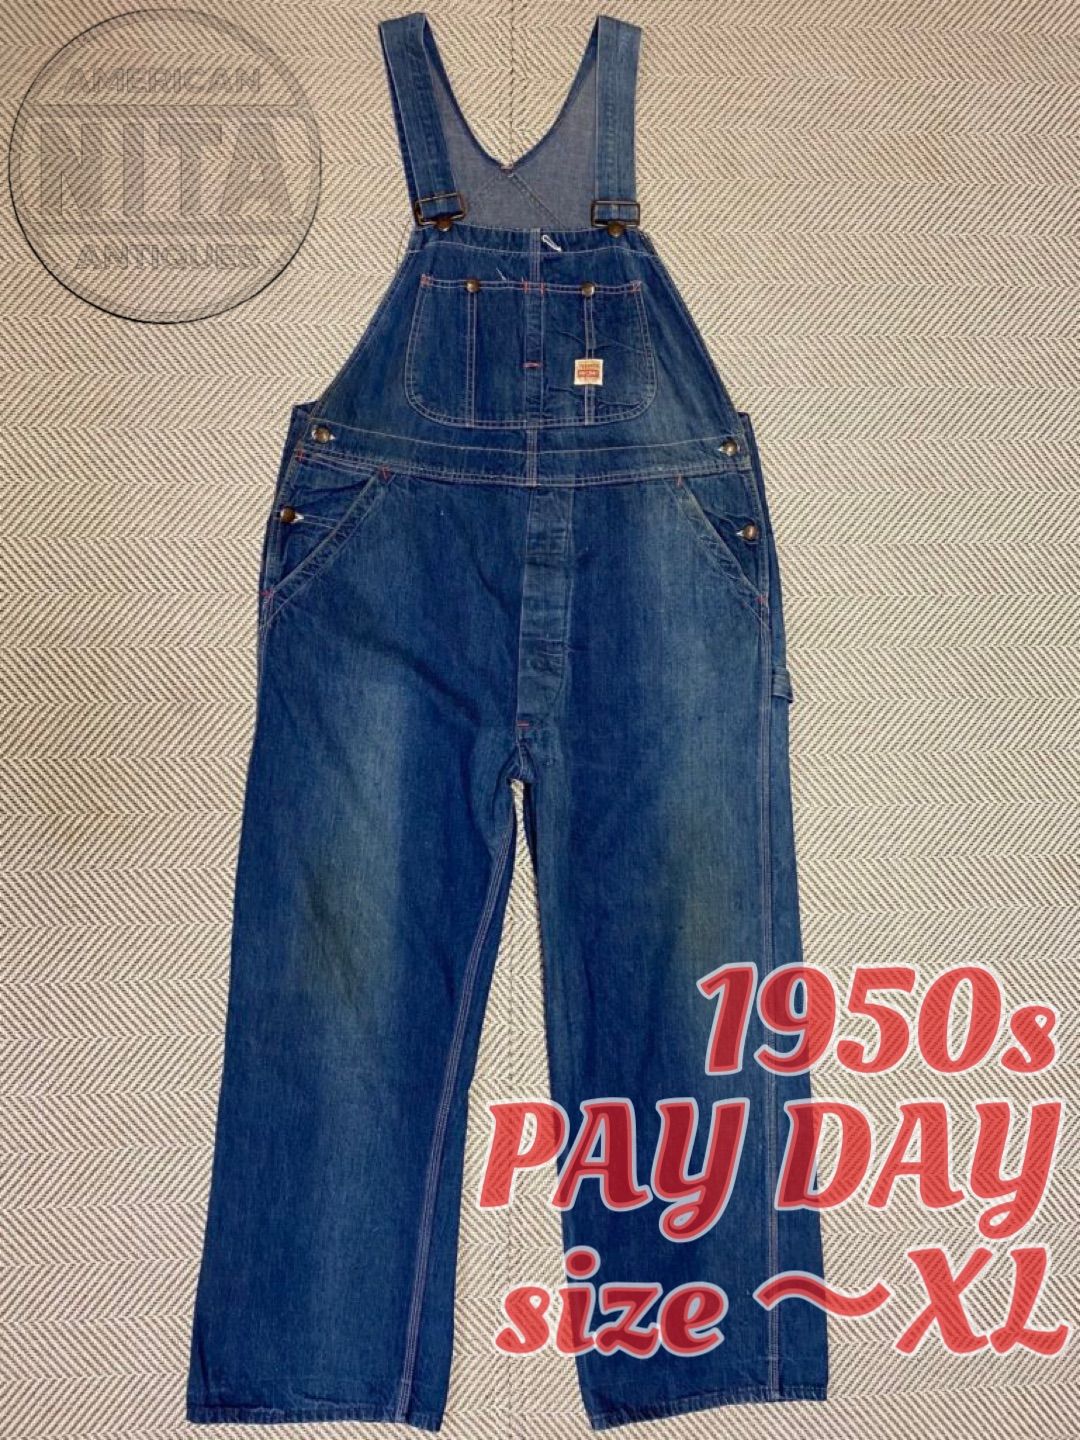 50s vintage payday オーバーオール 人気度ランキング 51%割引 nods.gov.ag